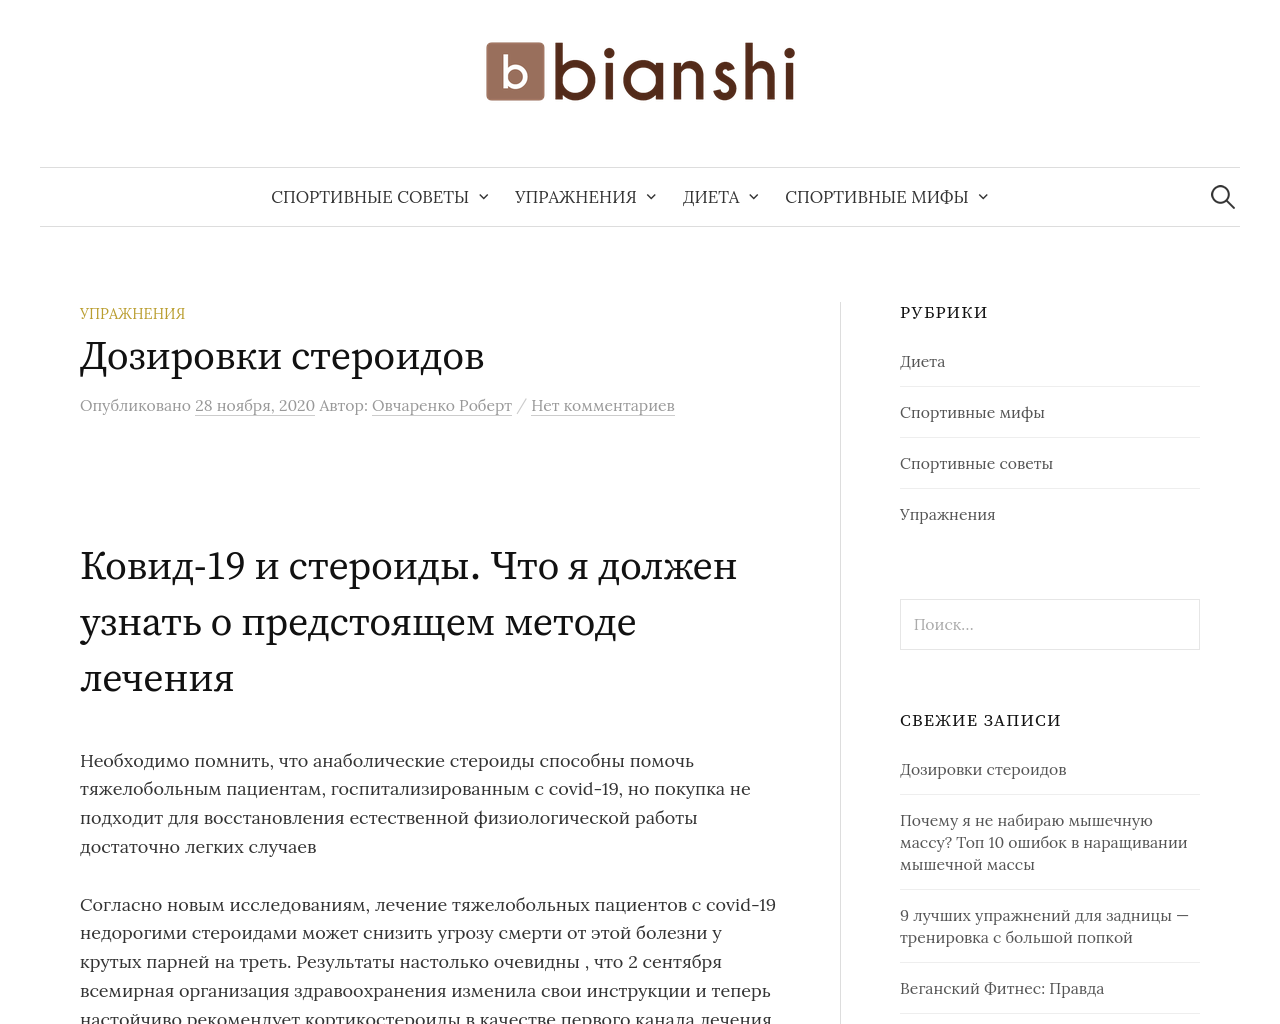 bianshi.com.ua